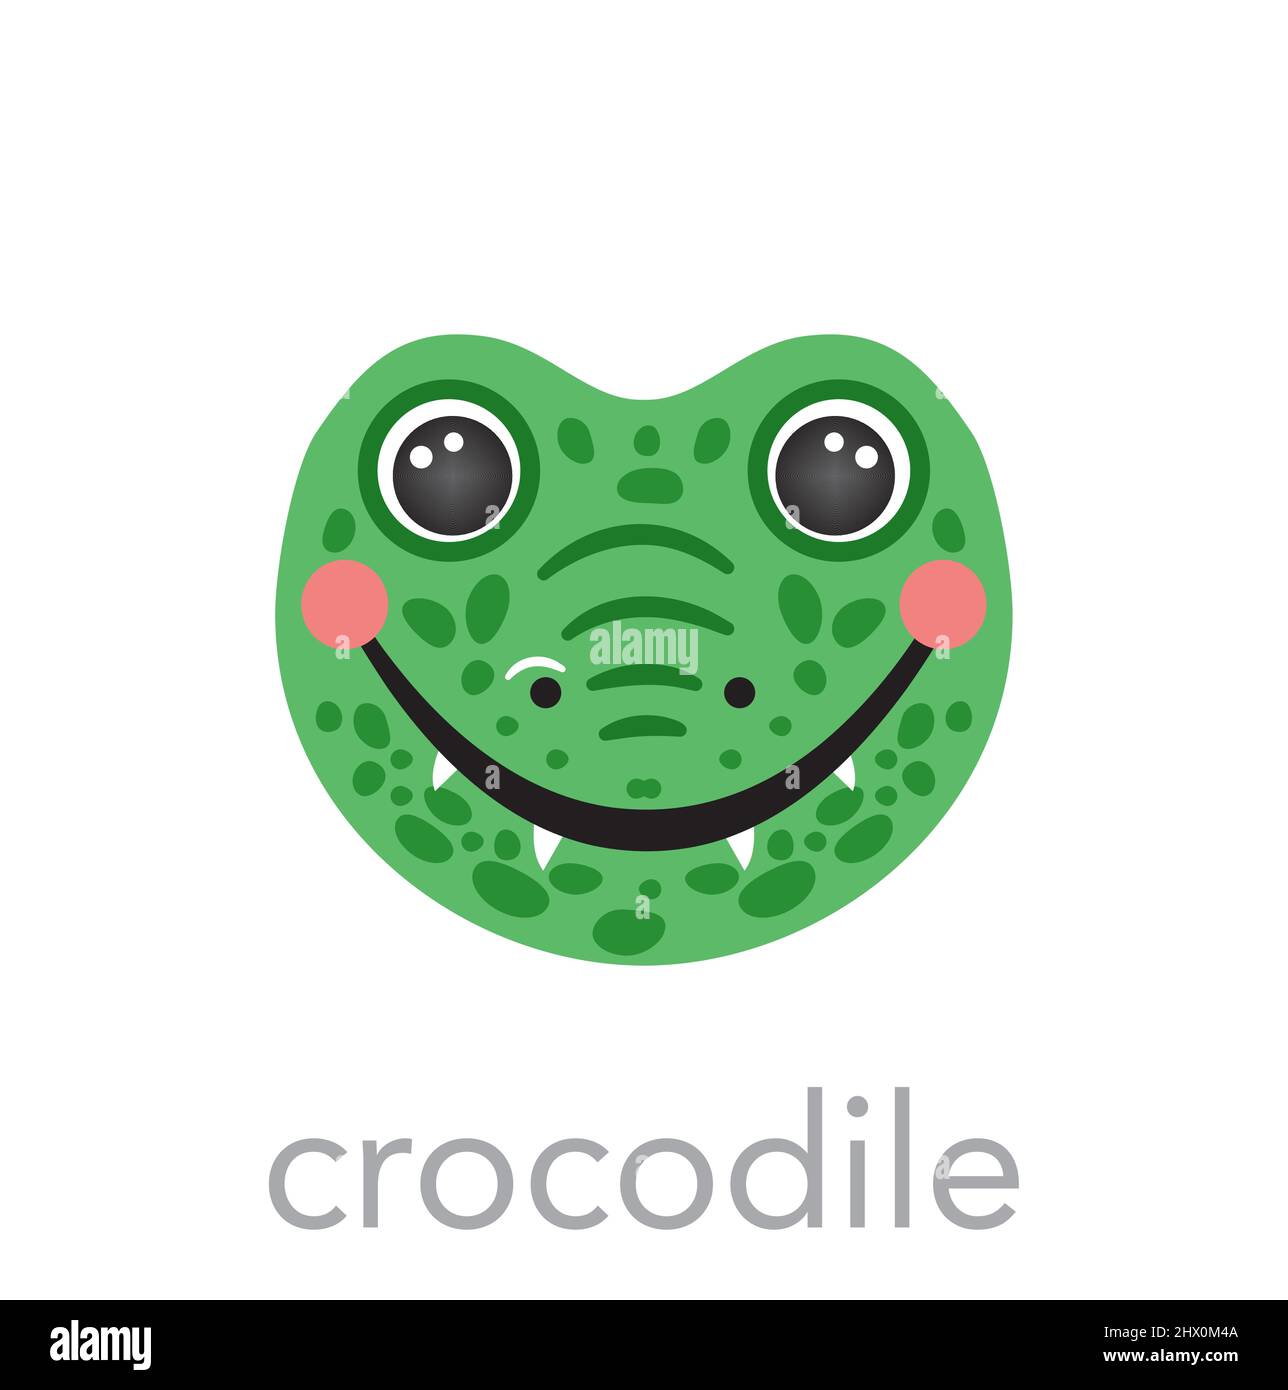 Con cá sấu được nhắc đến nhiều trong năm 2024 với tấm chân dung dễ thương của nó! Hãy tìm một cái tên phù hợp cho con cá sấu đáng yêu của bạn để trở thành người chơi game tuyệt vời nhất. Hãy lựa chọn và tạo ra một cái tên độc đáo để thể hiện sự sáng tạo của bạn!
(Translation: The crocodile is mentioned a lot in 2024 with its cute portrait! Find a suitable name for your cute crocodile to become the greatest gamer. Choose and create a unique name to show your creativity!)